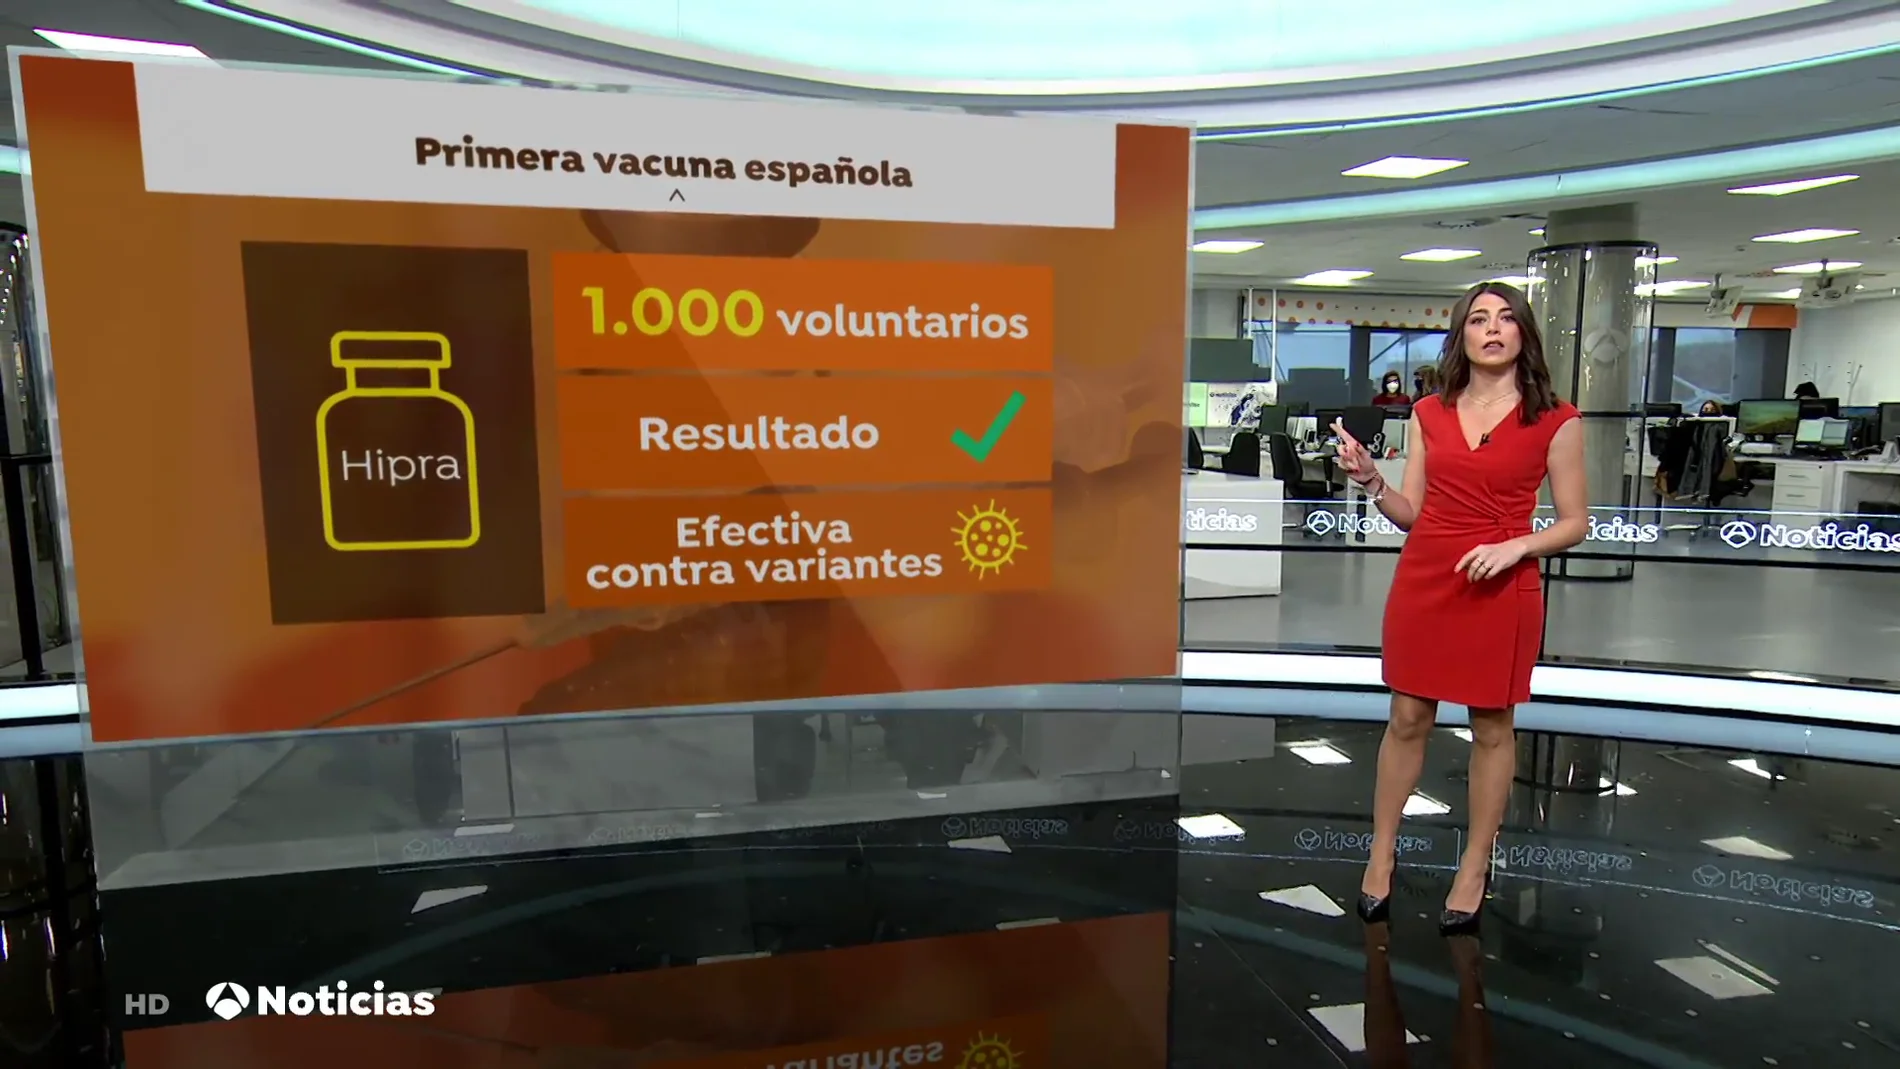 La vacuna española contra el covid-19 presenta buenos resultados contra la variante ómicron 